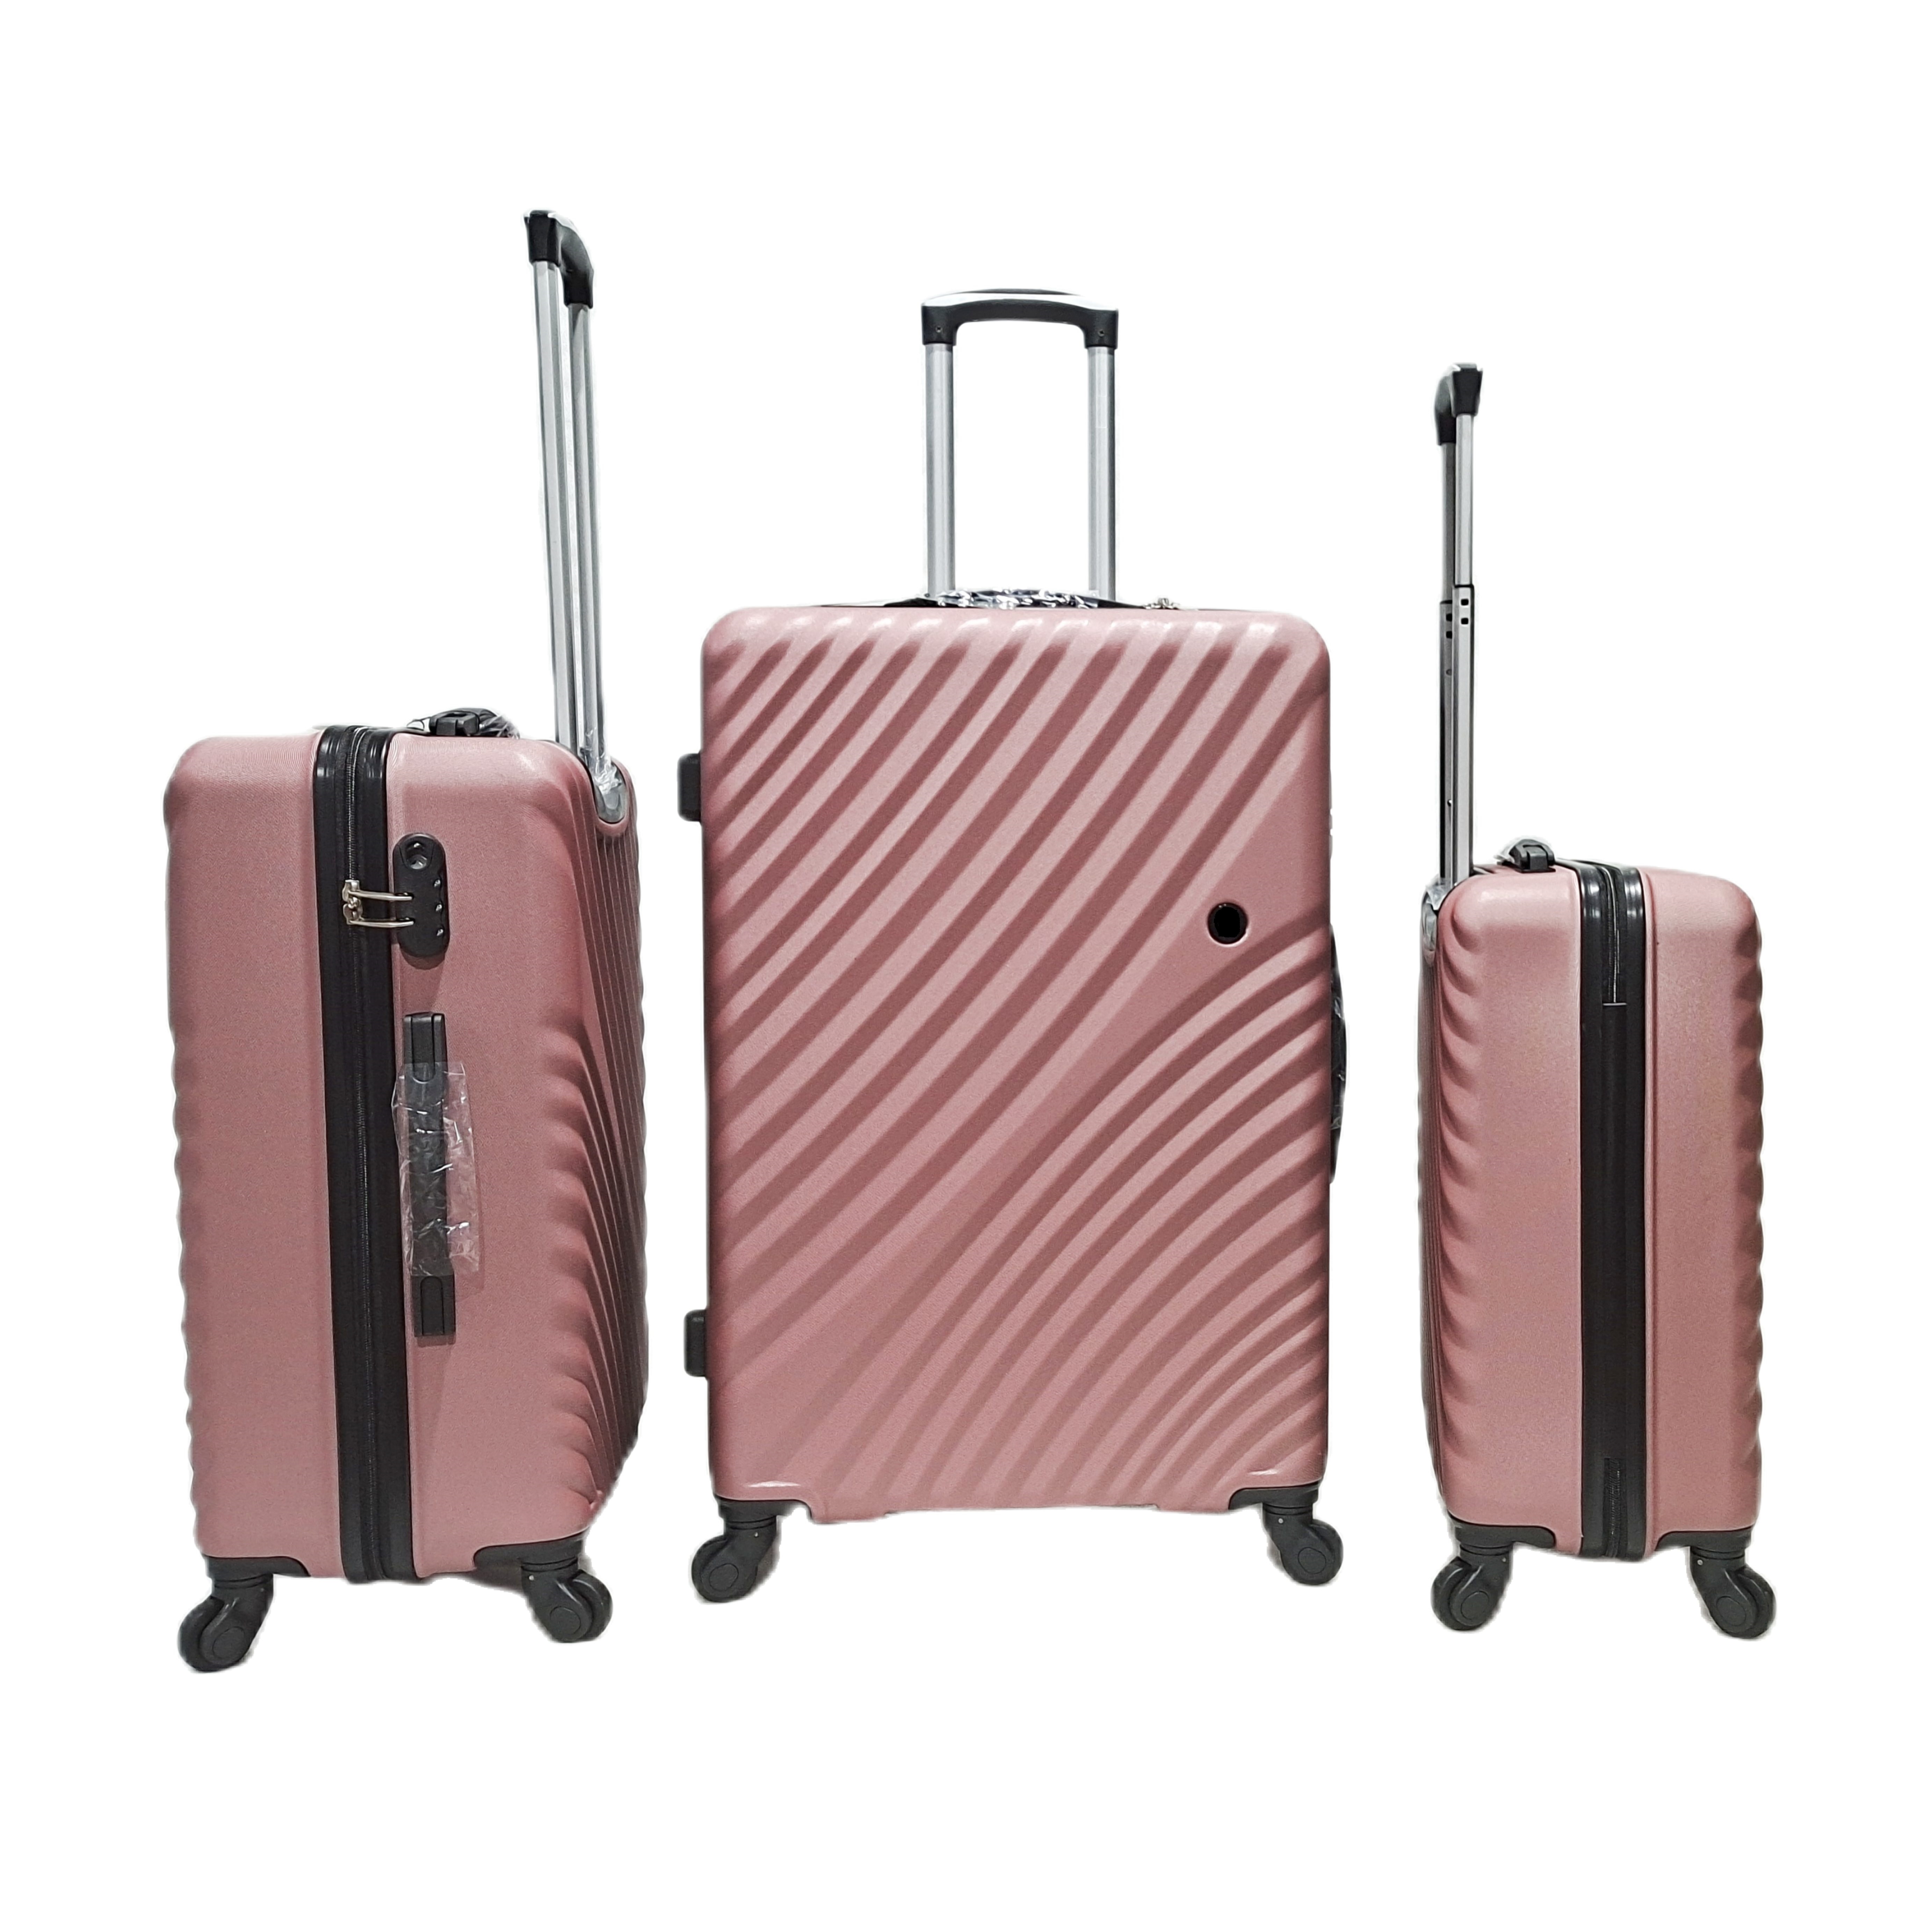 تصميم جديد ABS حقائب السفر حقائب السفر 4 سبينر عجلة مجموعة حقيبة تروللي